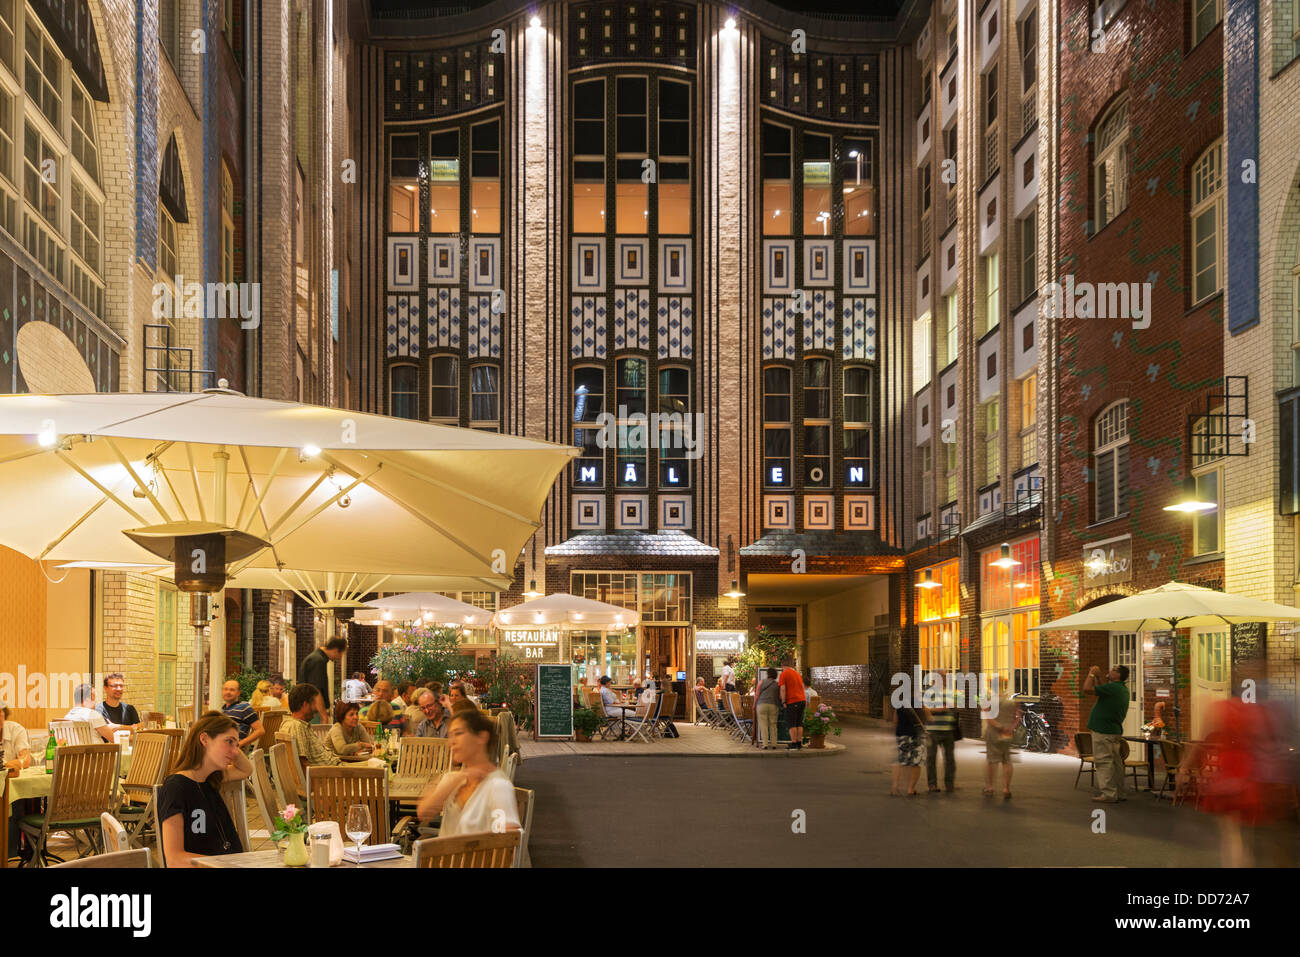 Belebten Restaurants am Abend in eine Hackeschen Hof oder einen Hof am Hackescher Markt in Mitte Berlin Deutschland Stockfoto